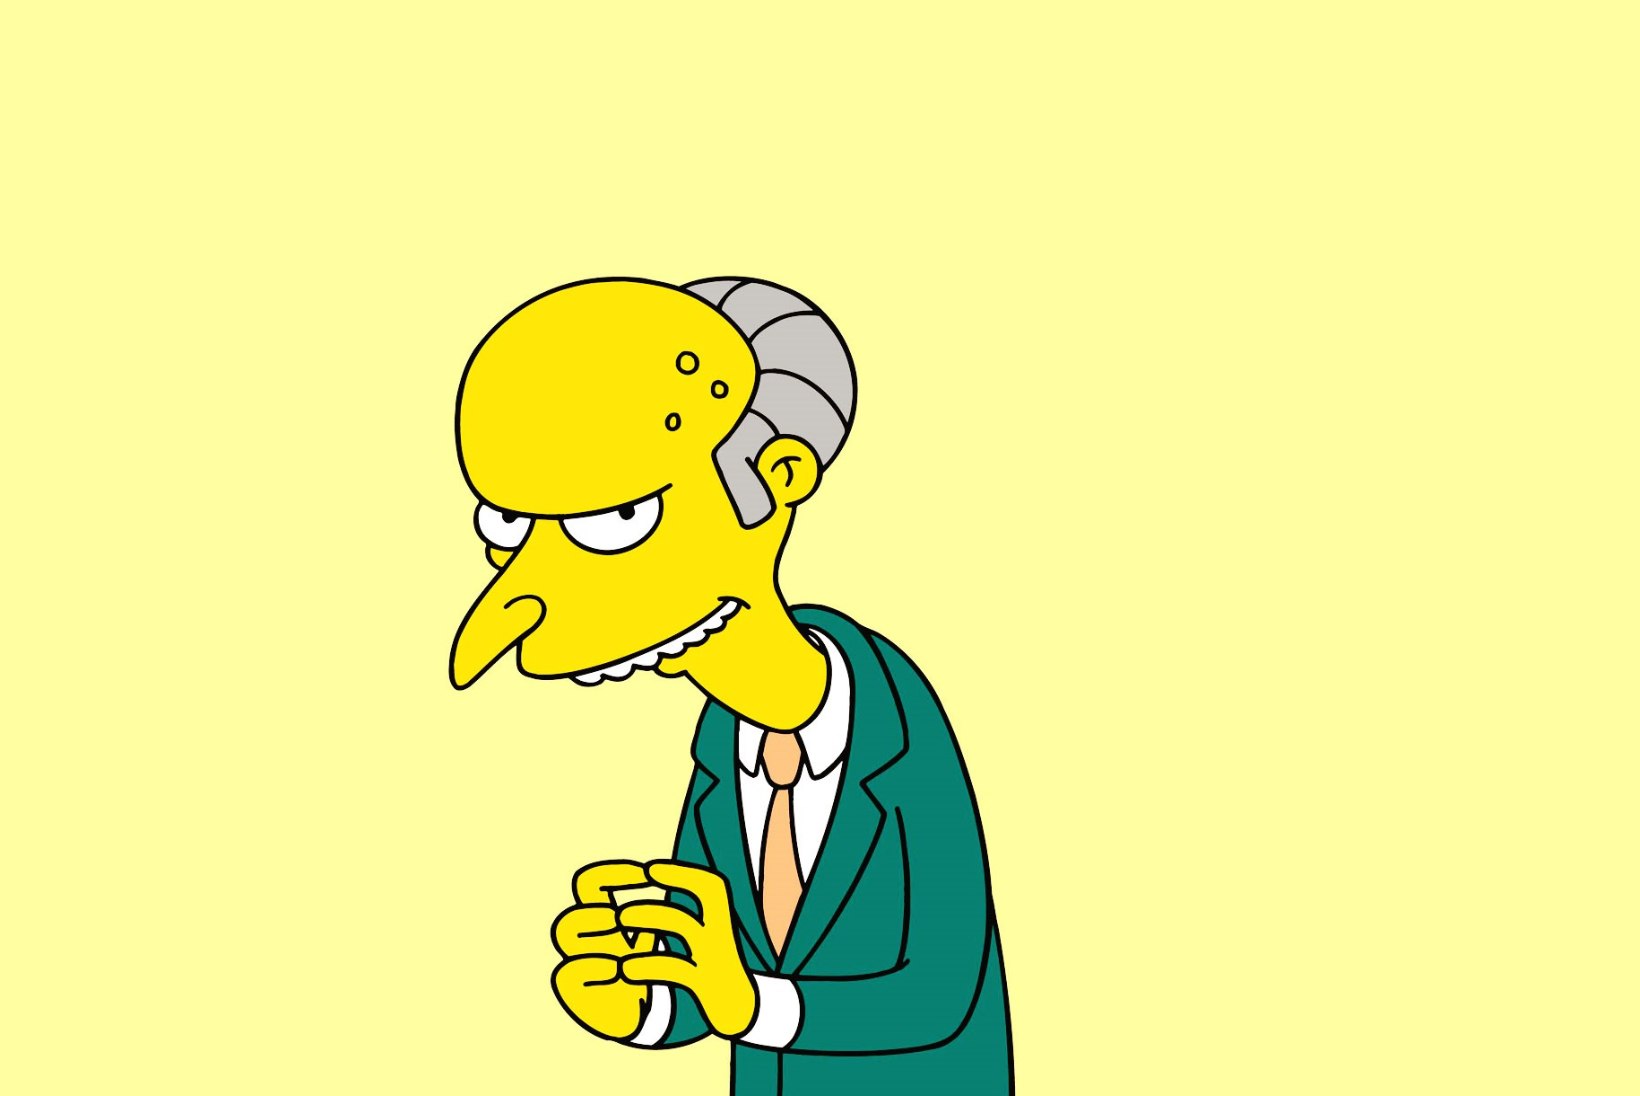 KAS NED FLANDERS JA MR BURNS JÄÄVAD HÄÄLETUKS? Harry Shearer lahkus "Simpsonitest" 